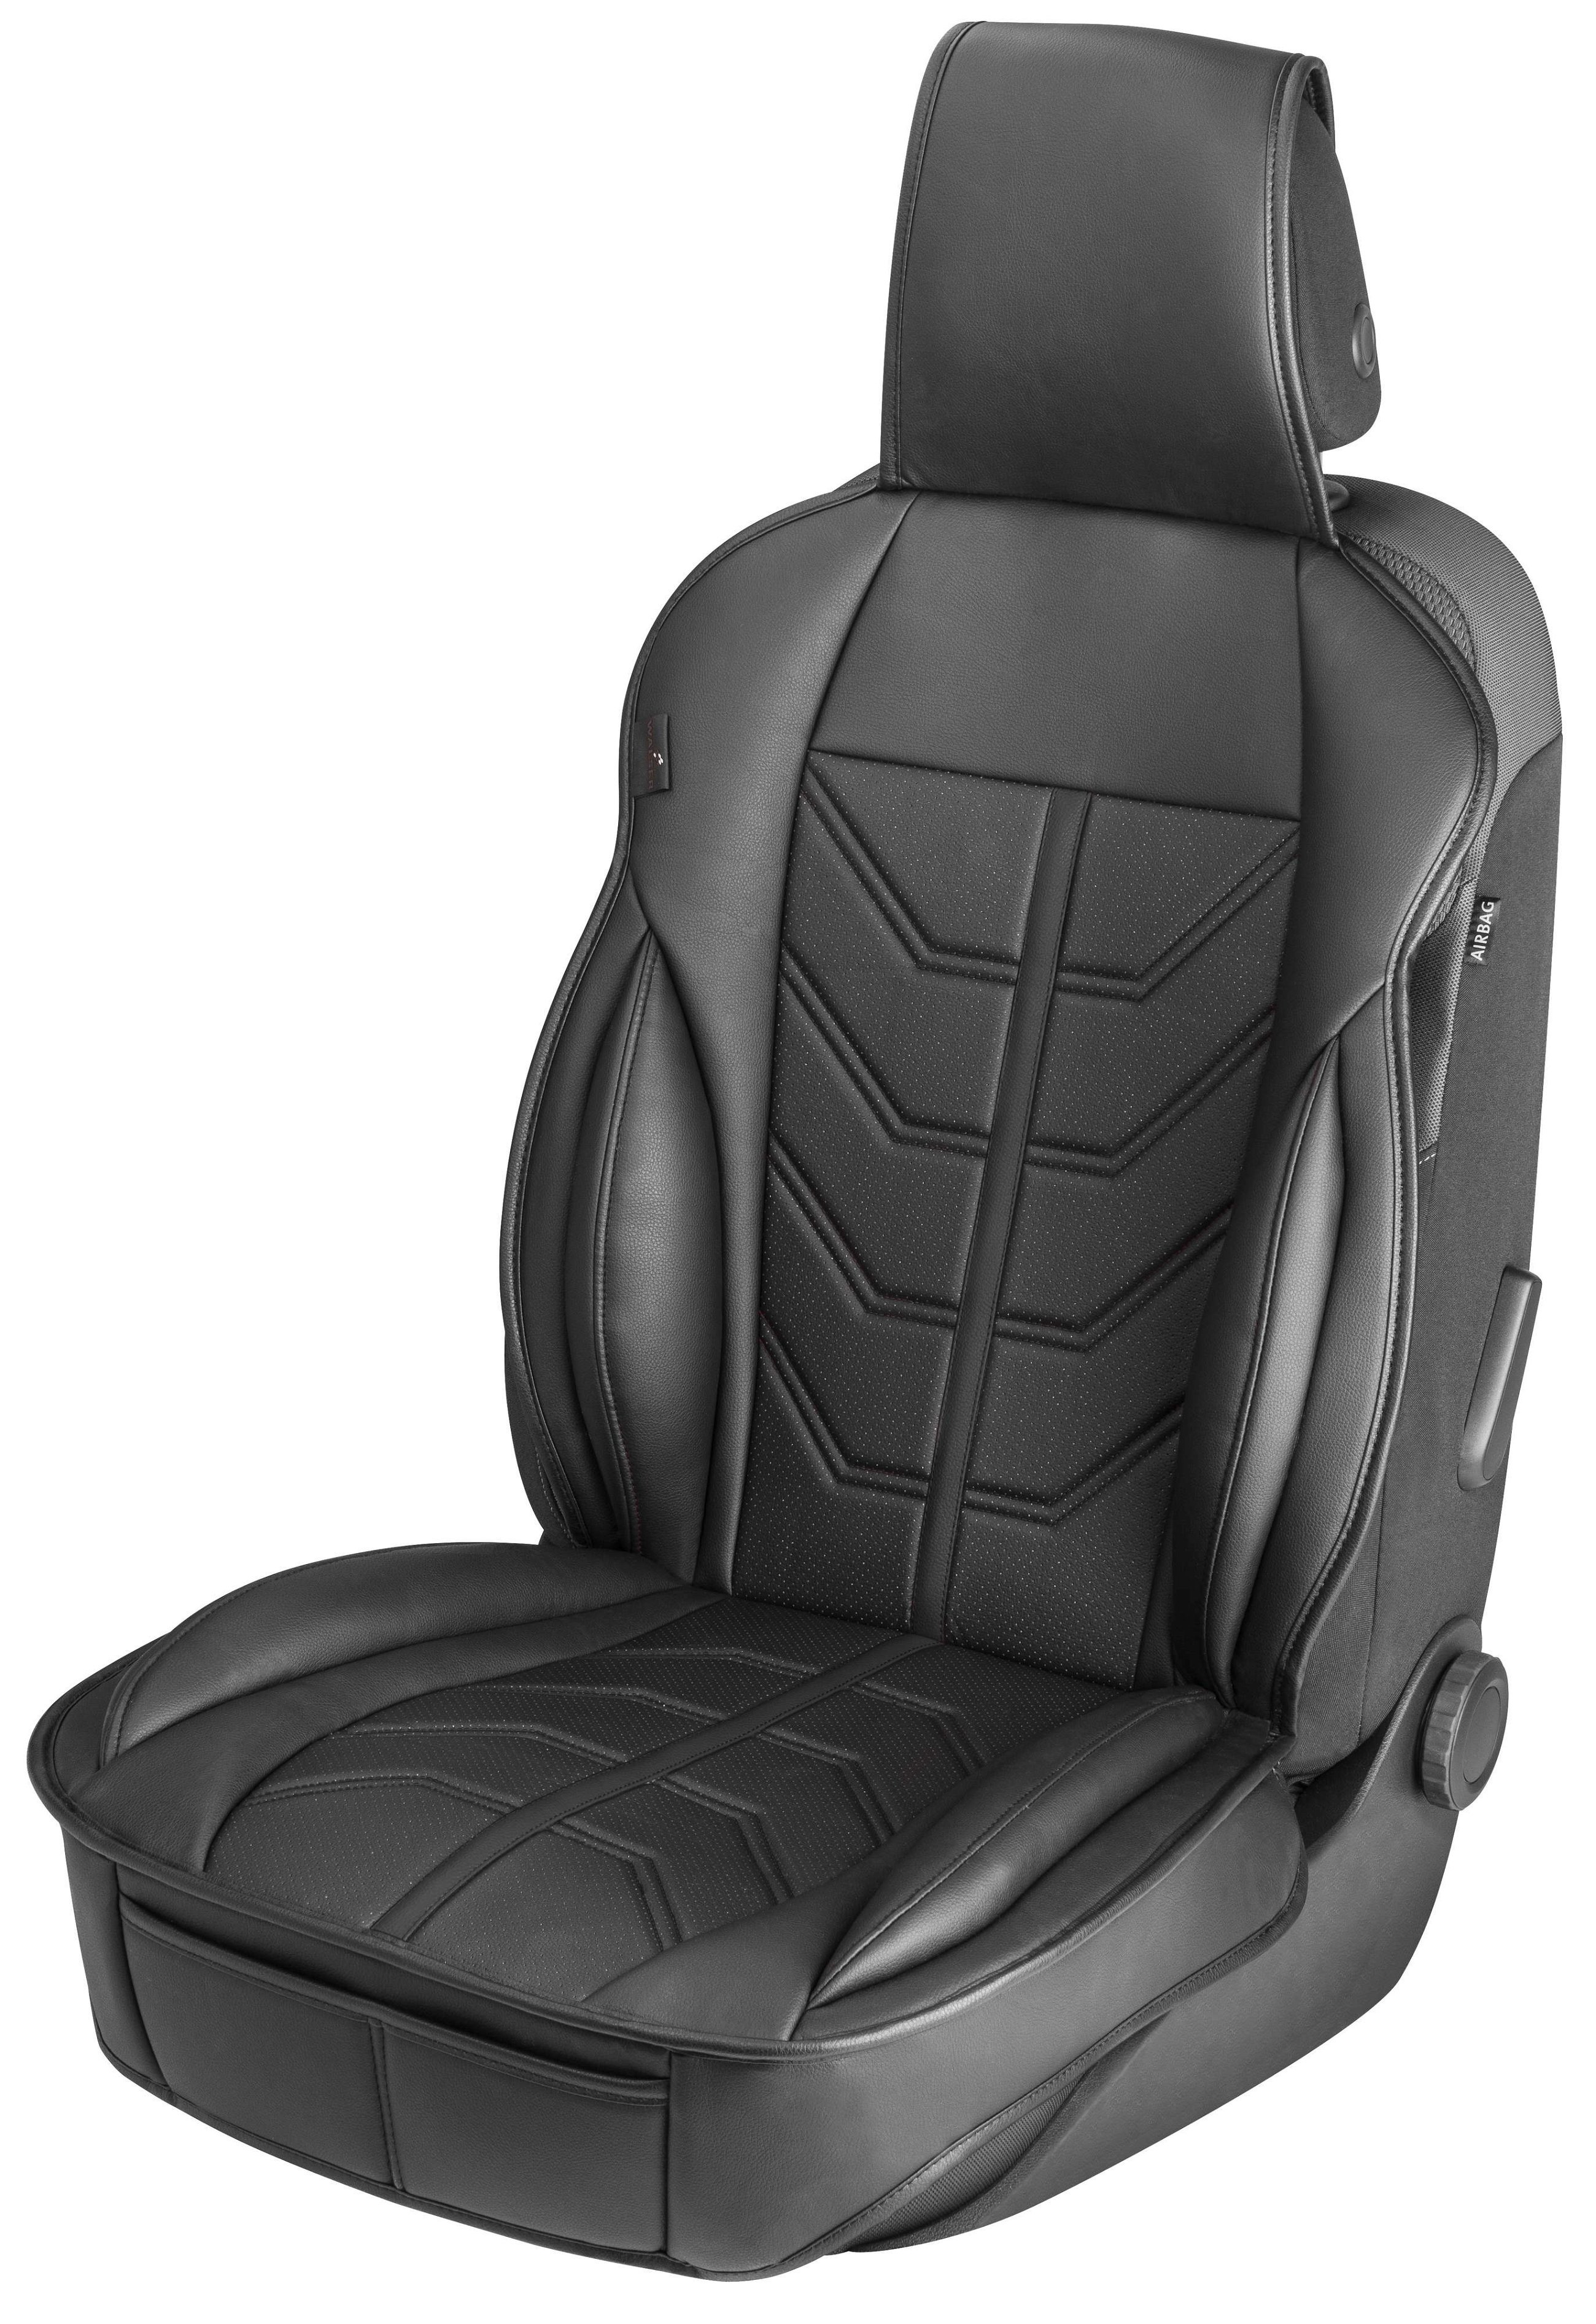 PKW Sitzauflage Kimi, Auto-Sitzaufleger im Rennsportdesign schwarz